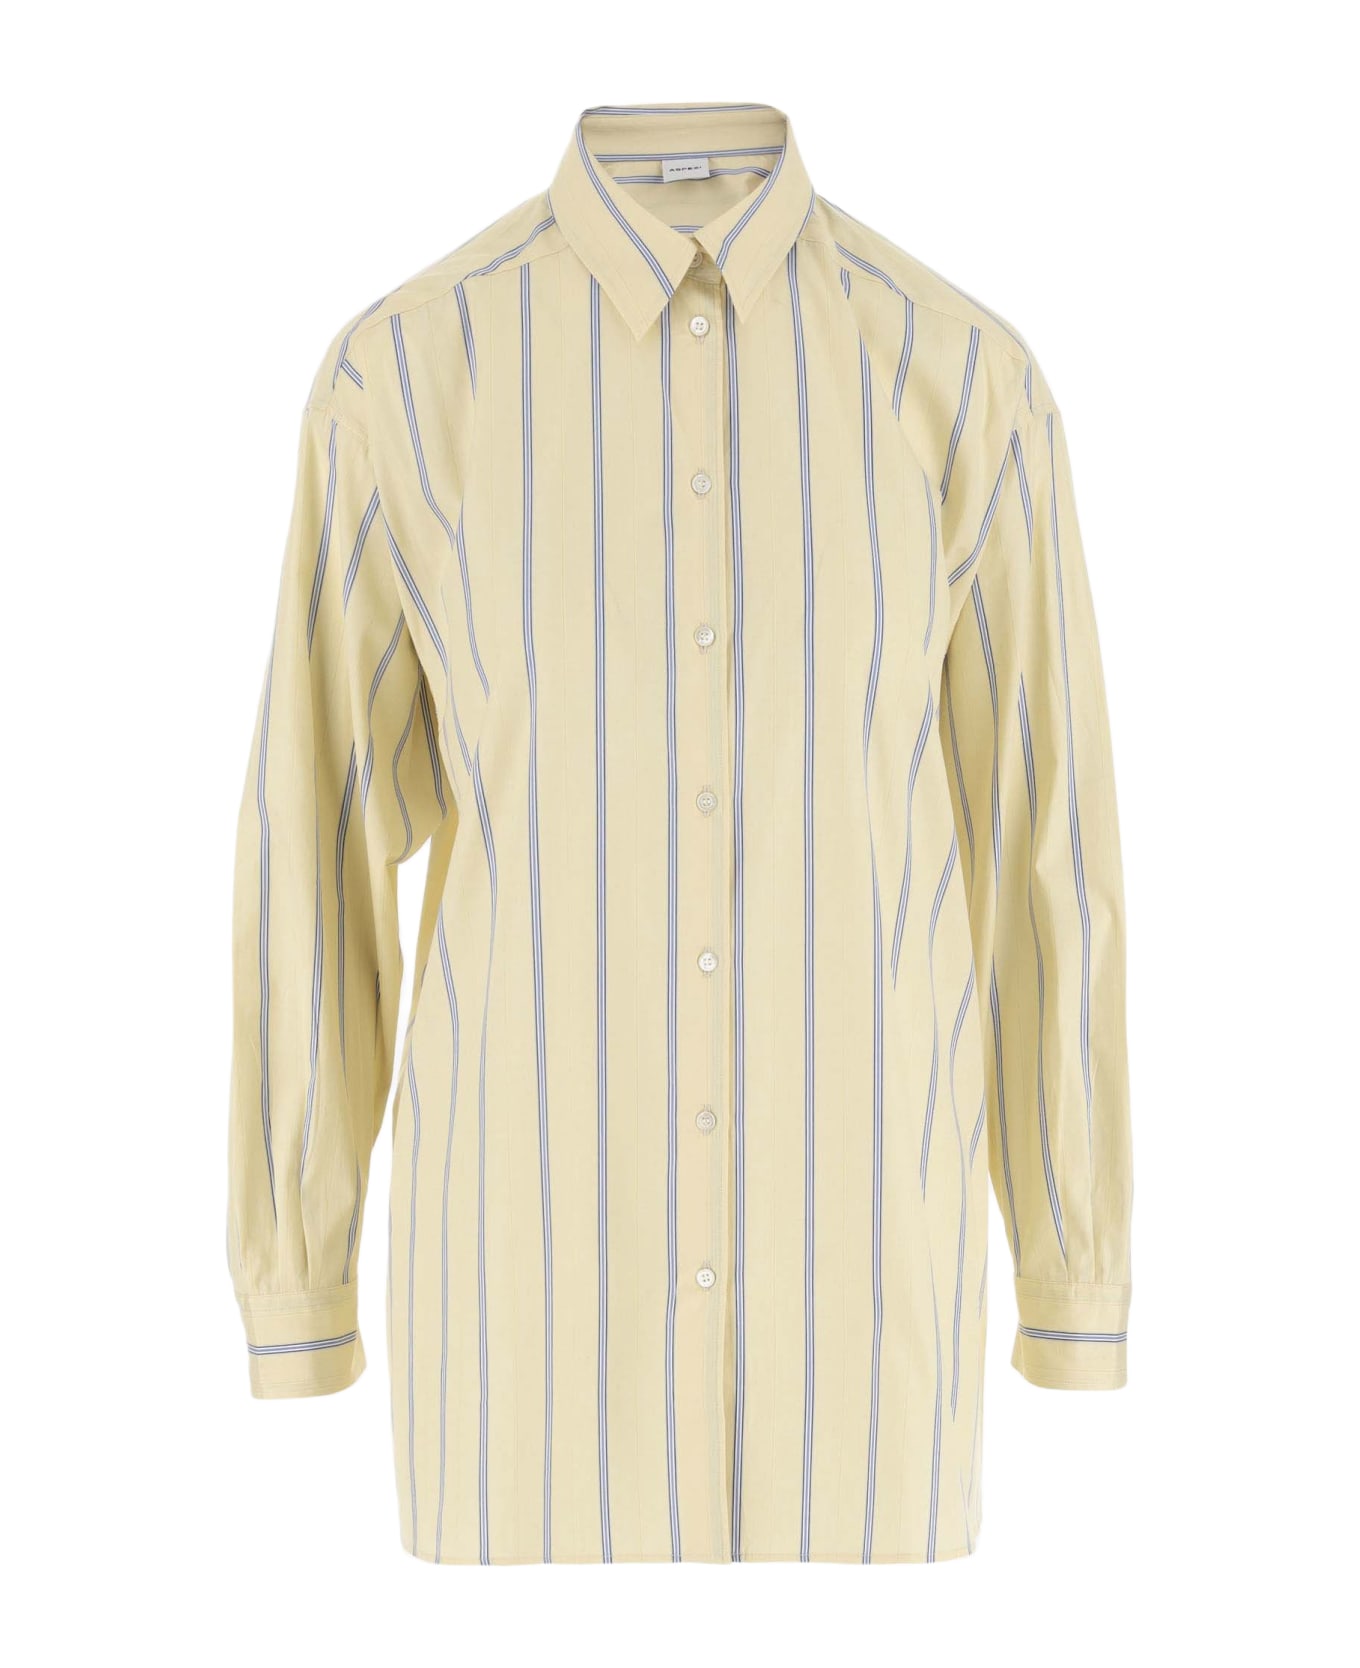 Aspesi Cotton Shirt With Striped Pattern - Yellow